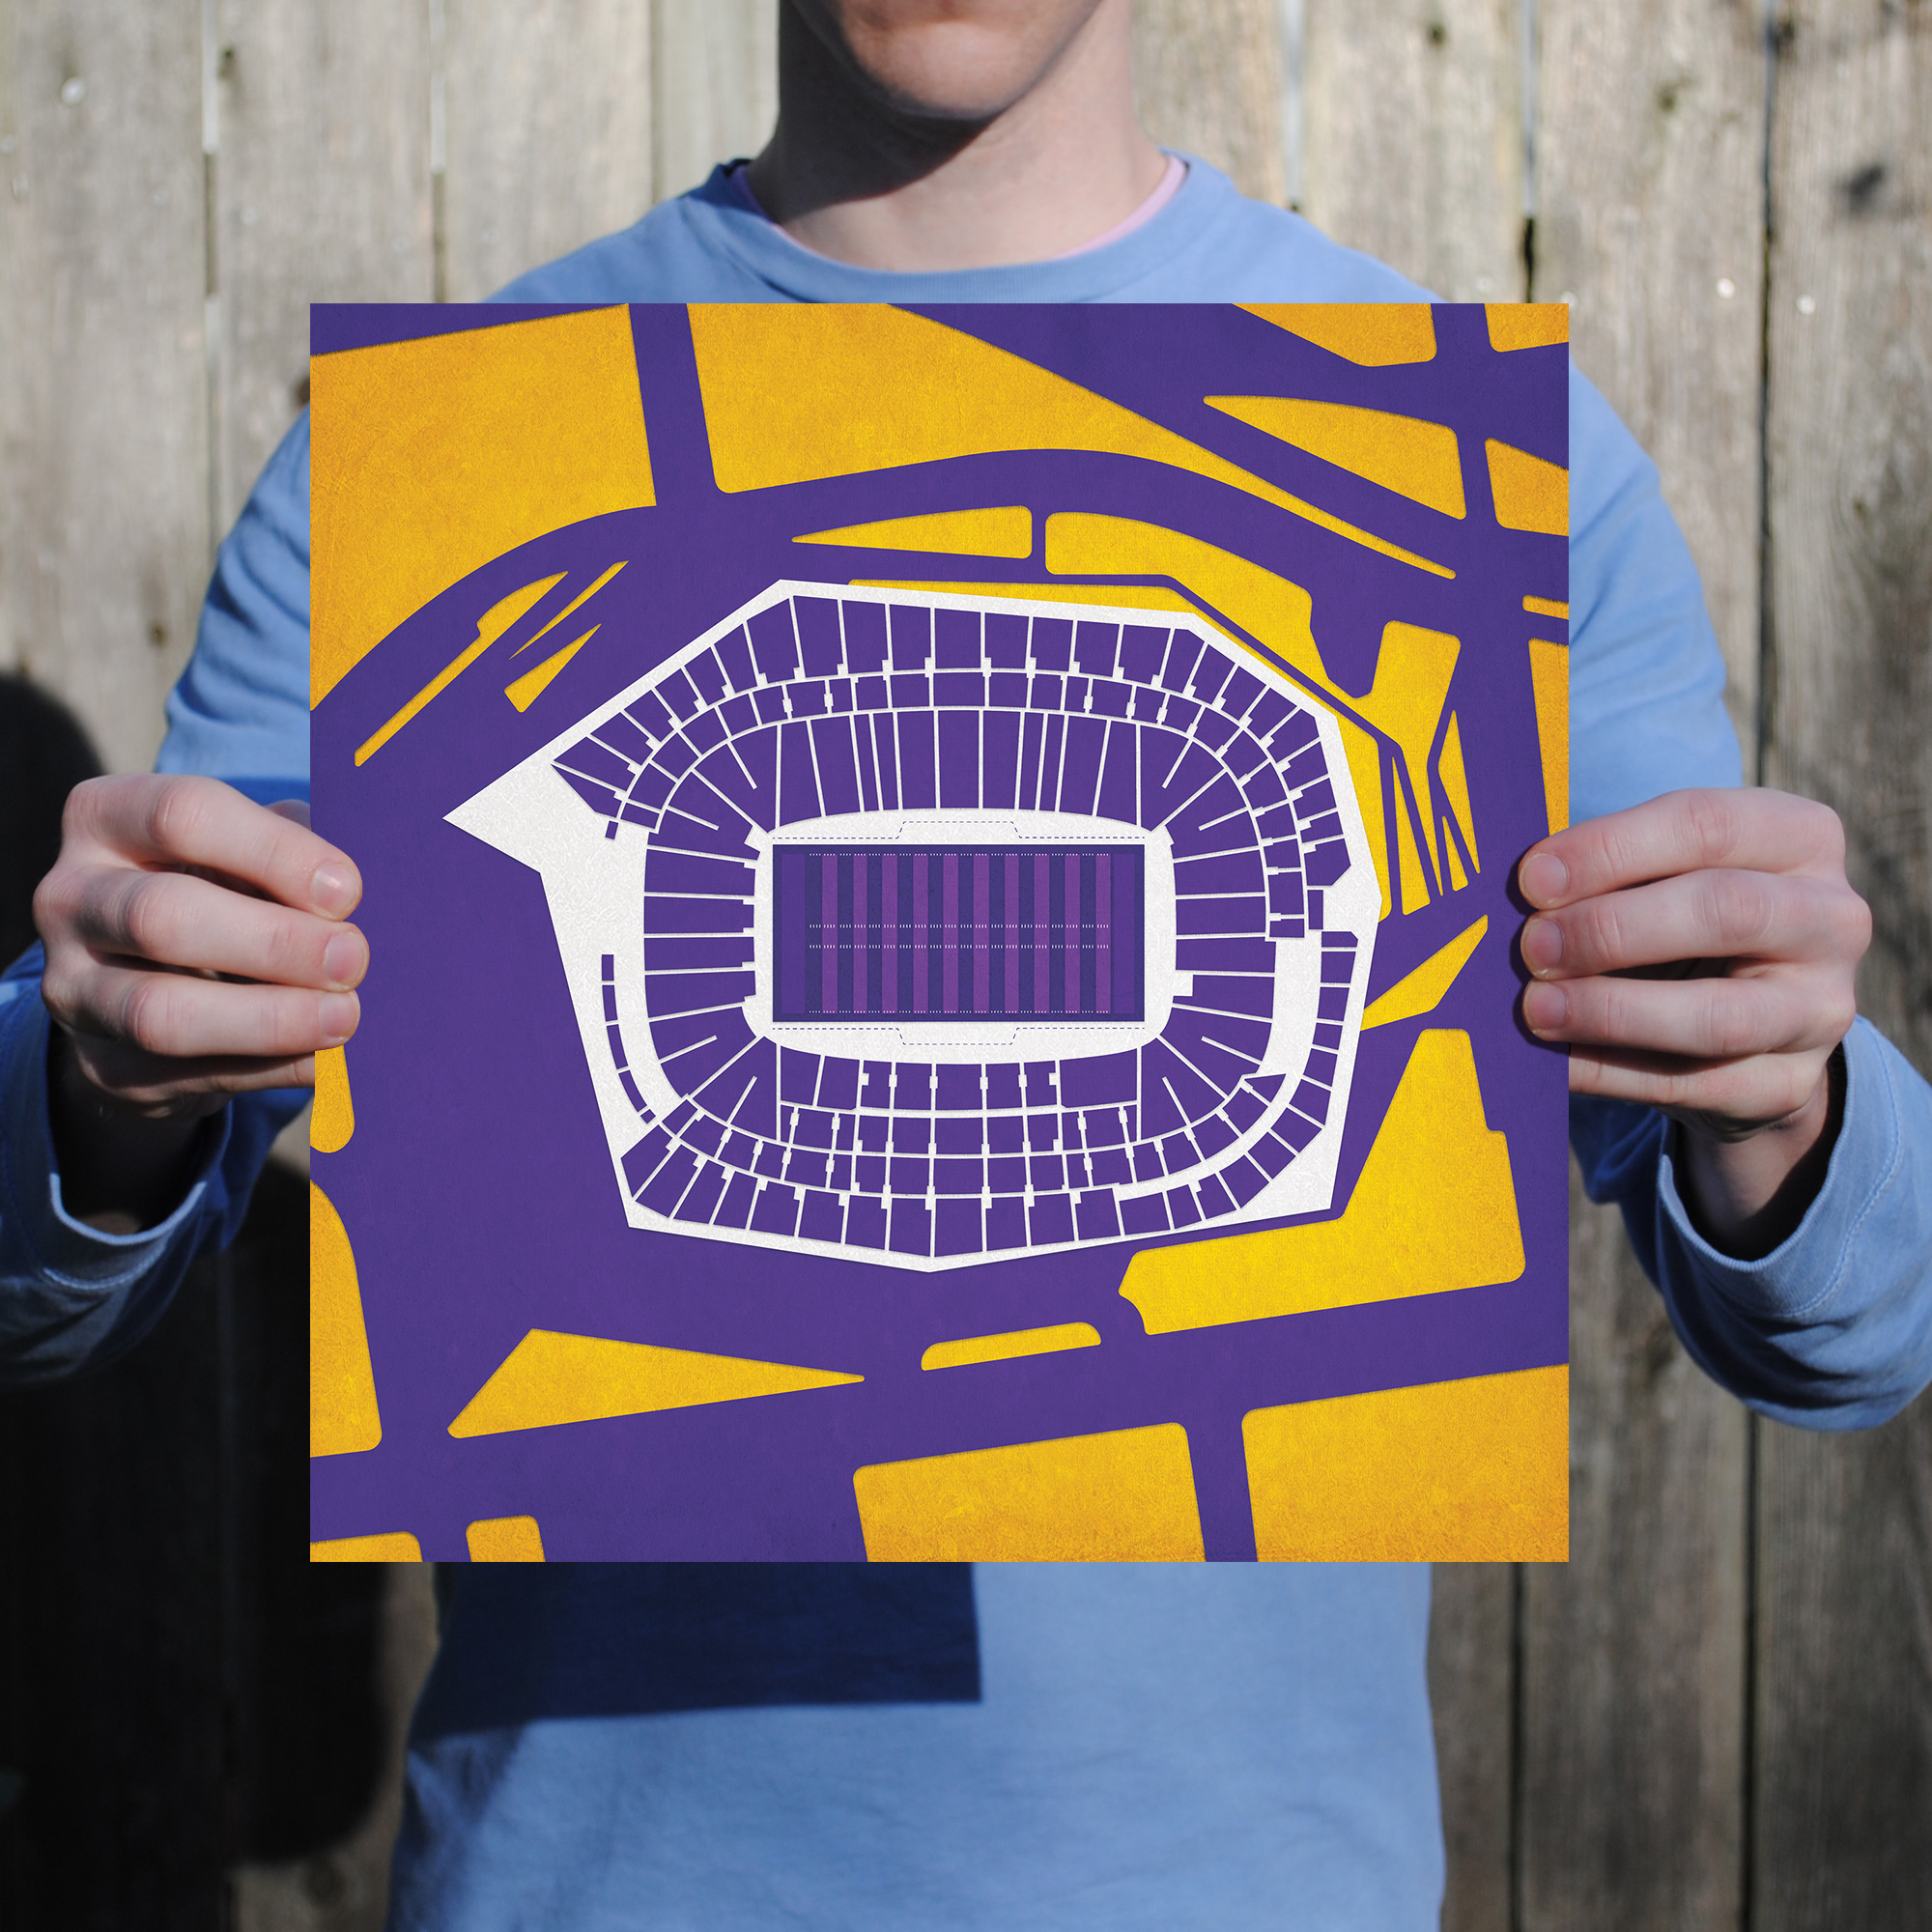 U.S. Bank Stadium Football Stadium Print, Minnesota Vikings Football